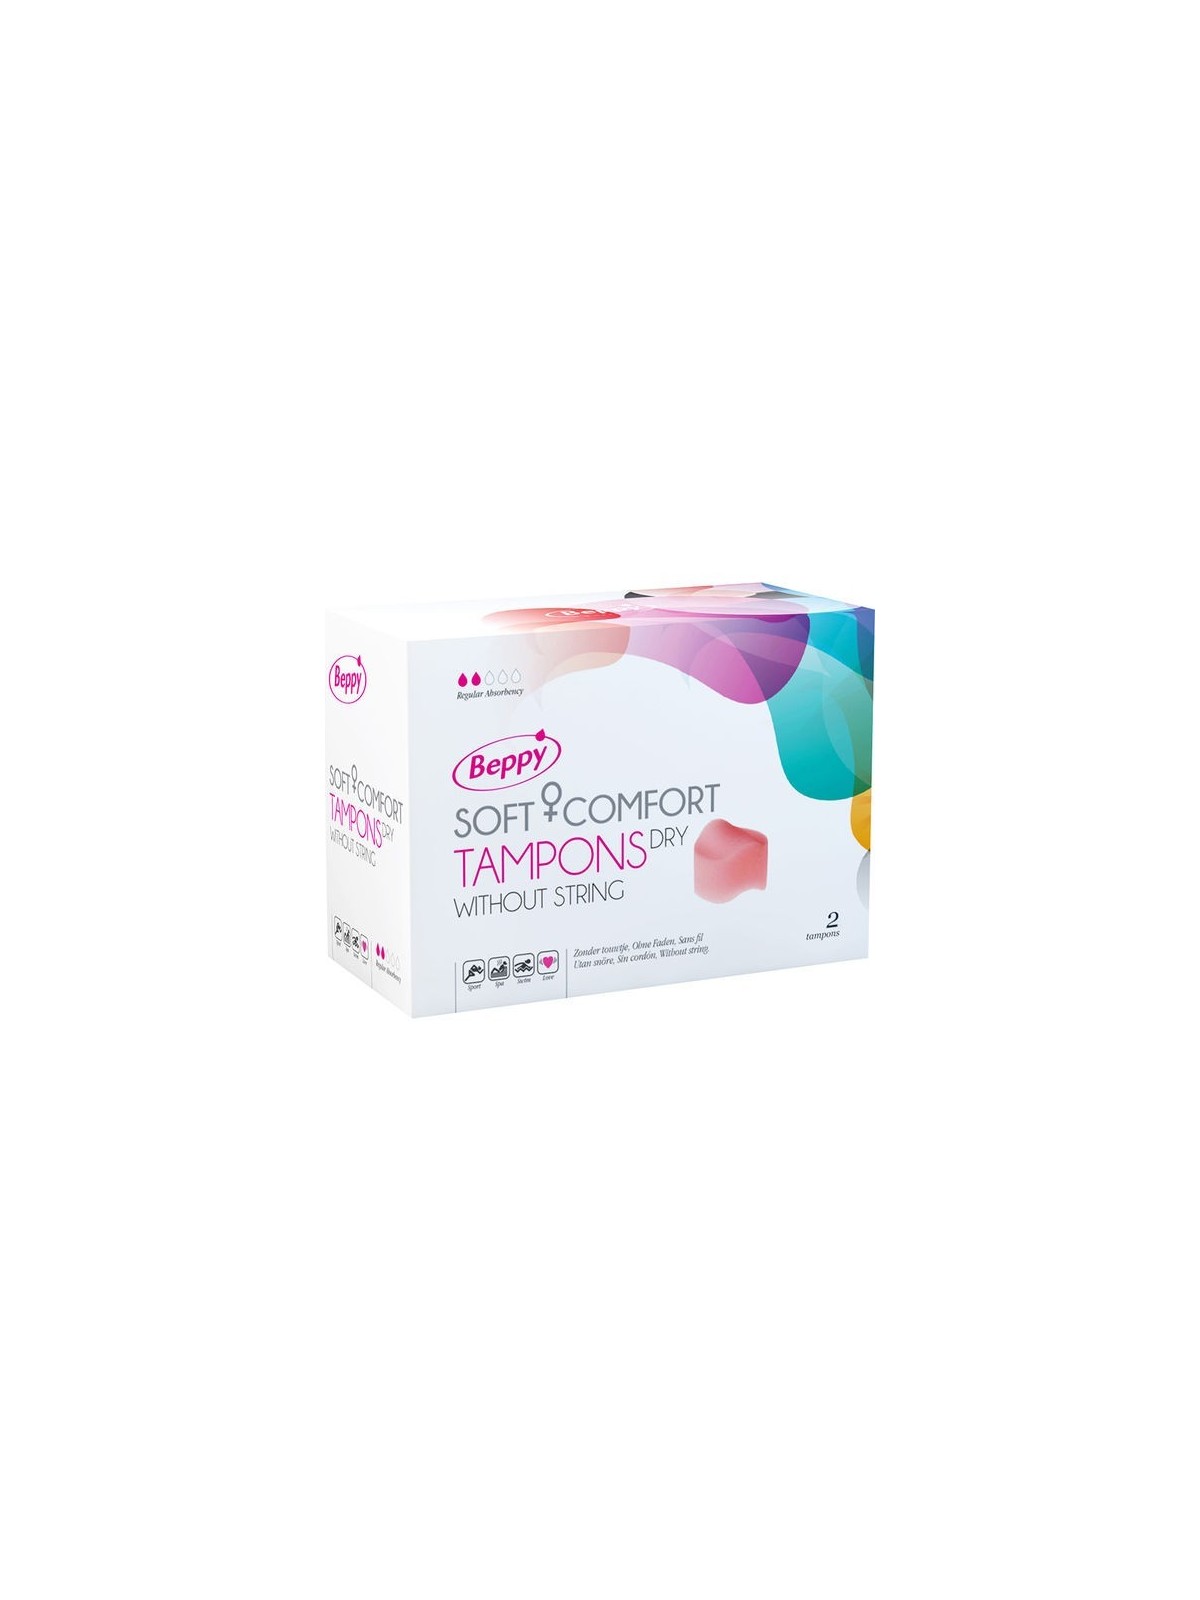 Beppy Tampones Clásicos - Comprar Menstruación Beppy - Tampones & copas menstruales (1)